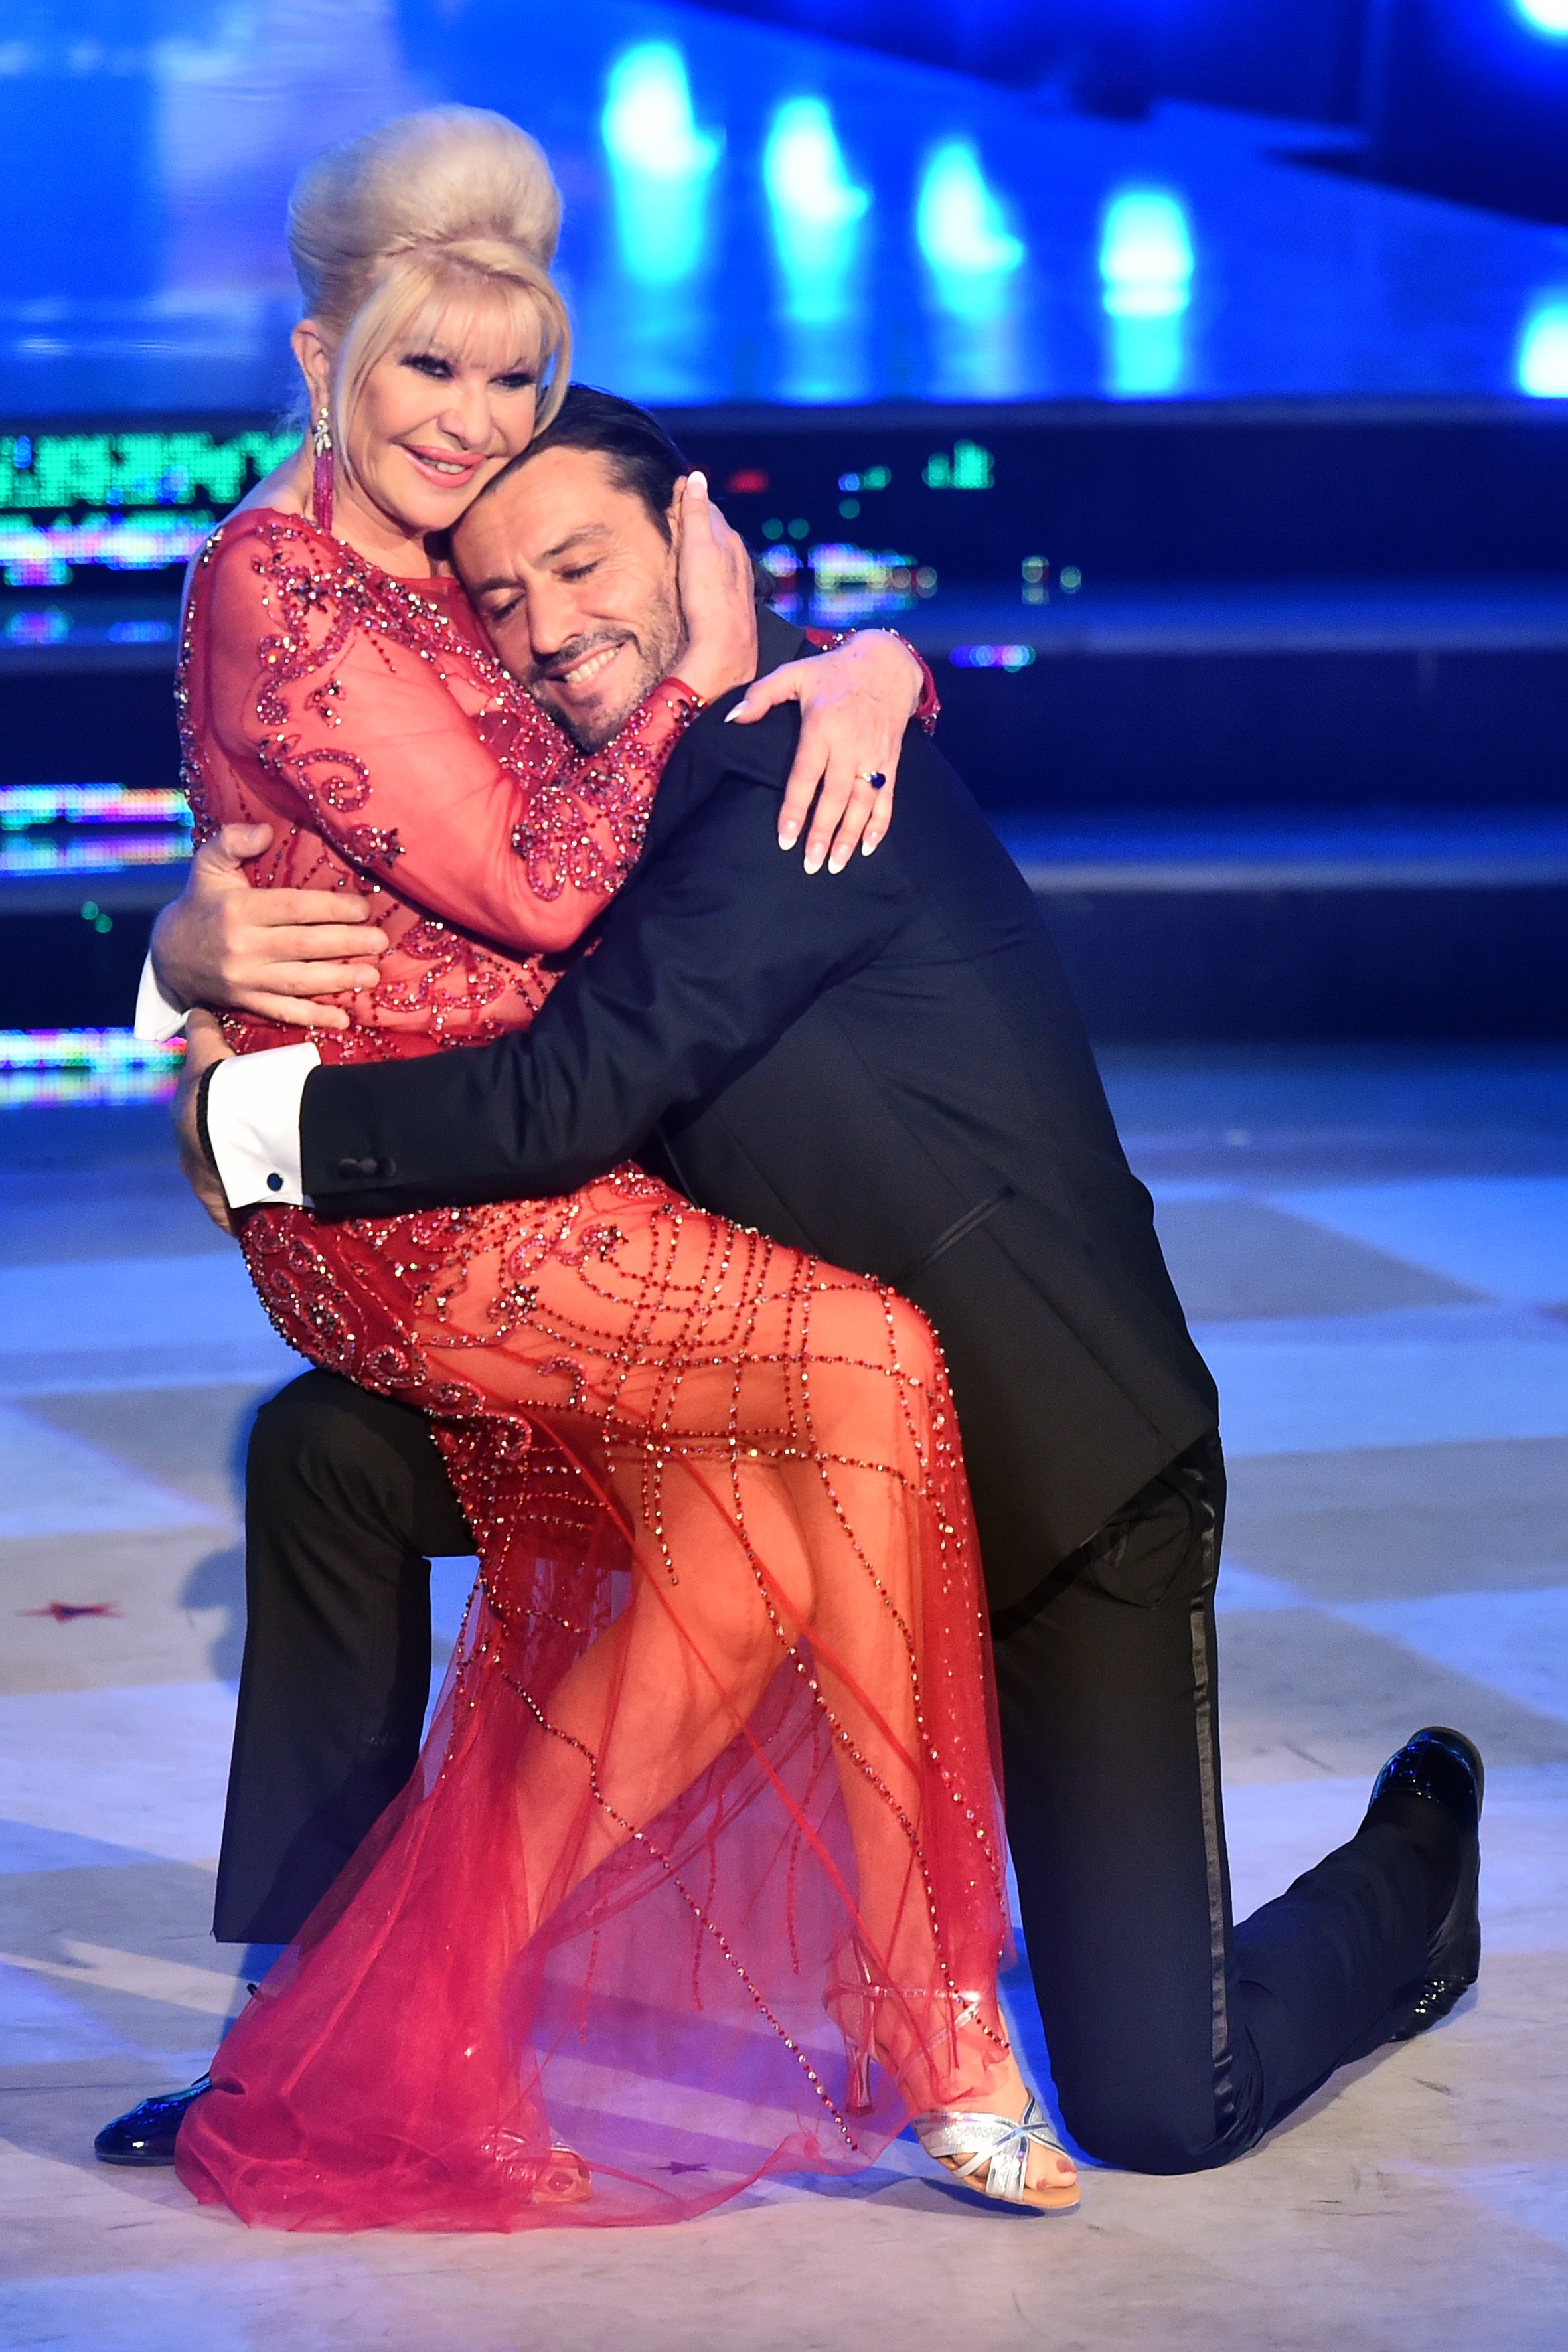 Ivana Trump y Rossano Rubicondi como invitados de "Dancing with the Stars", el 6 de mayo de 2018 en Roma Italia. ┃ Foto: Getty Images